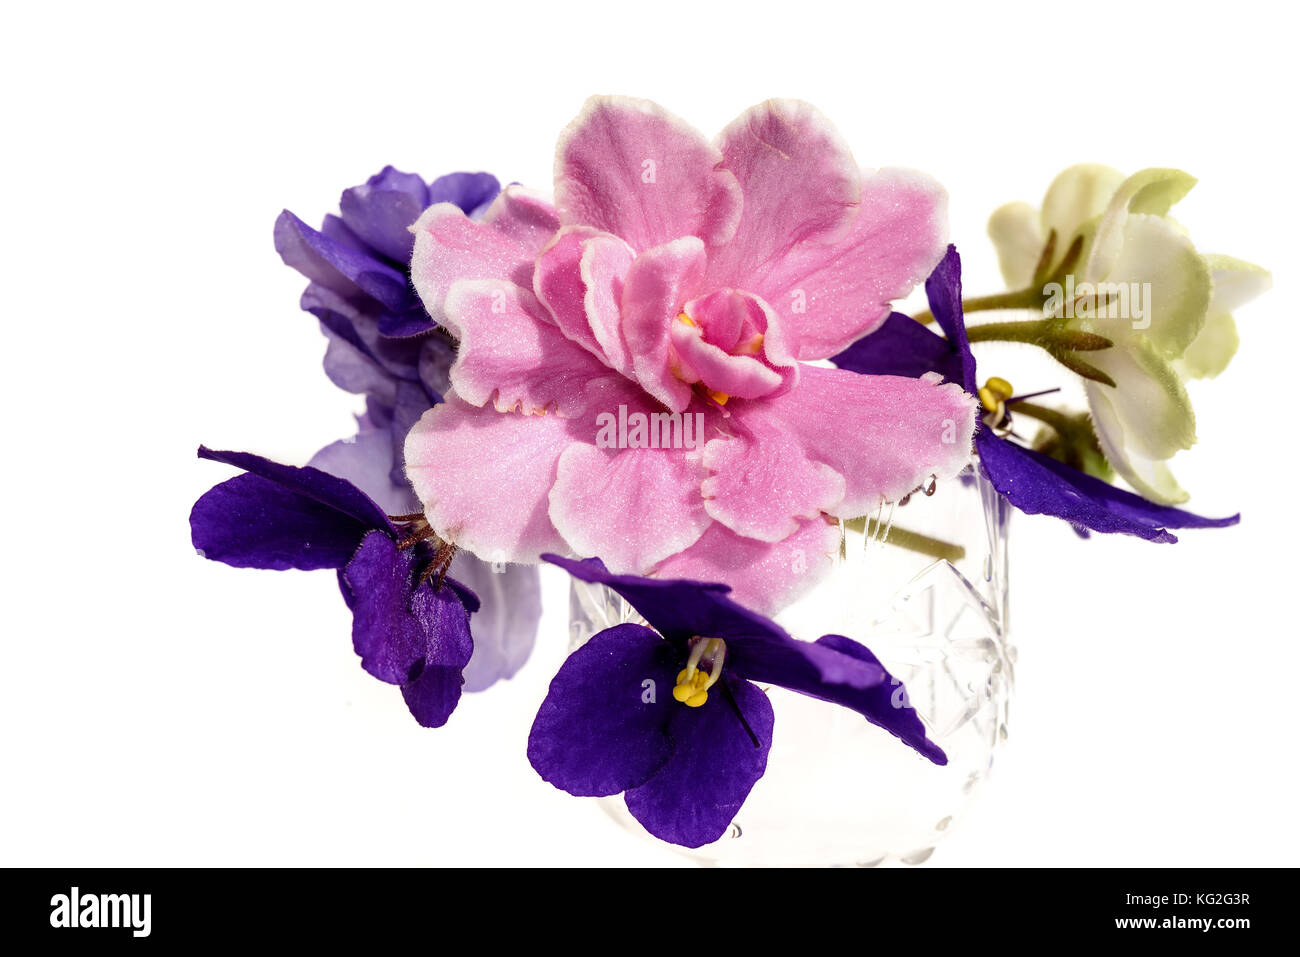 Printemps lumineux floral background avec un bouquet de violette, rose et blanc avec des fleurs vertes violettes sur fond blanc Banque D'Images